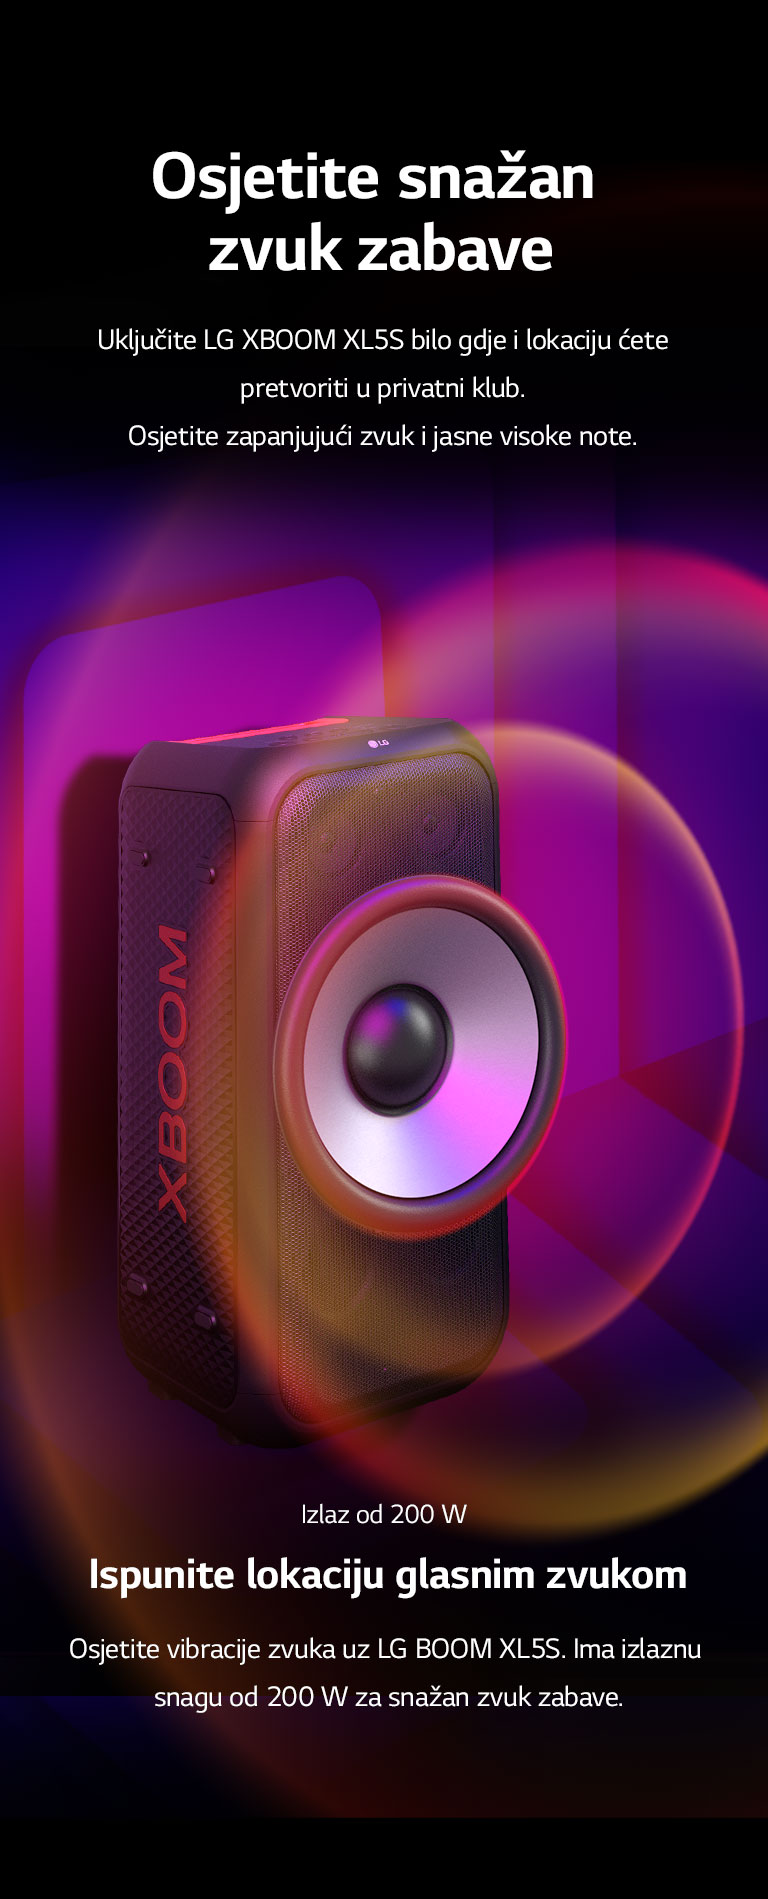 LG XBOOM XL5S postavljen je u beskrajnom prostoru. Na zidu je ilustrirana kvadratna grafika zvuka. Po sredini zvučnika nalazi se 6,5-inčni ogromni zvučnik za duboke tonove koji je povećan da bi se naglasio njegov zvuk od 200 W. Zvučni valovi izlaze iz zvučnika za duboke tonove.